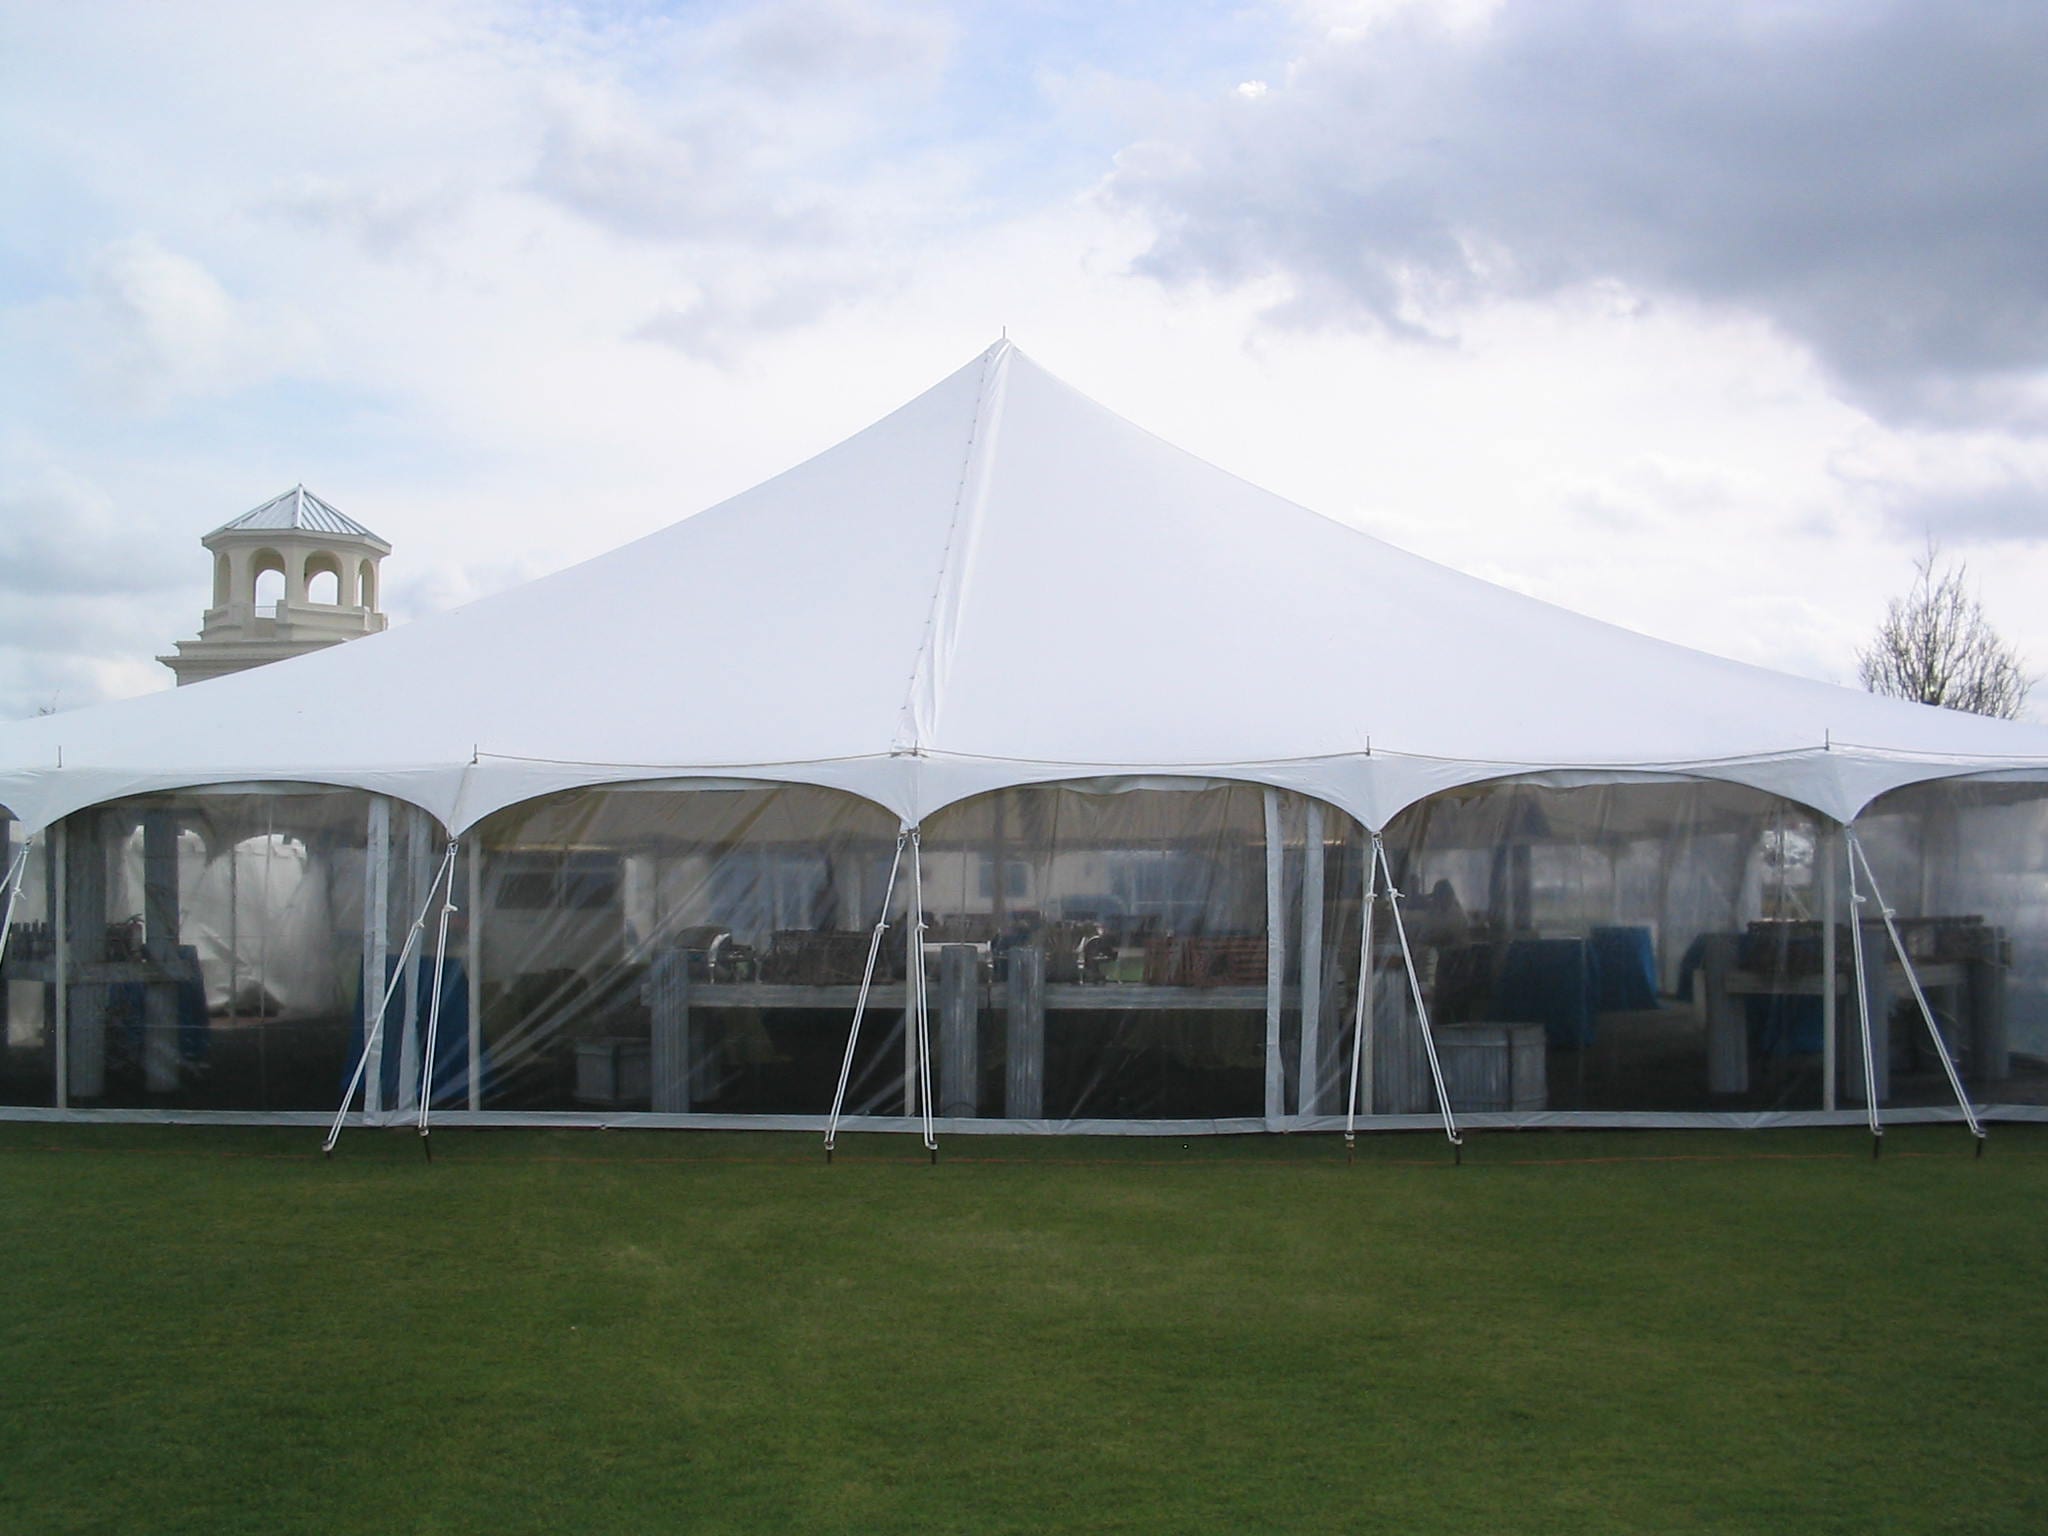 8' high clear sidewalls in a 60' x 60' pole tent.